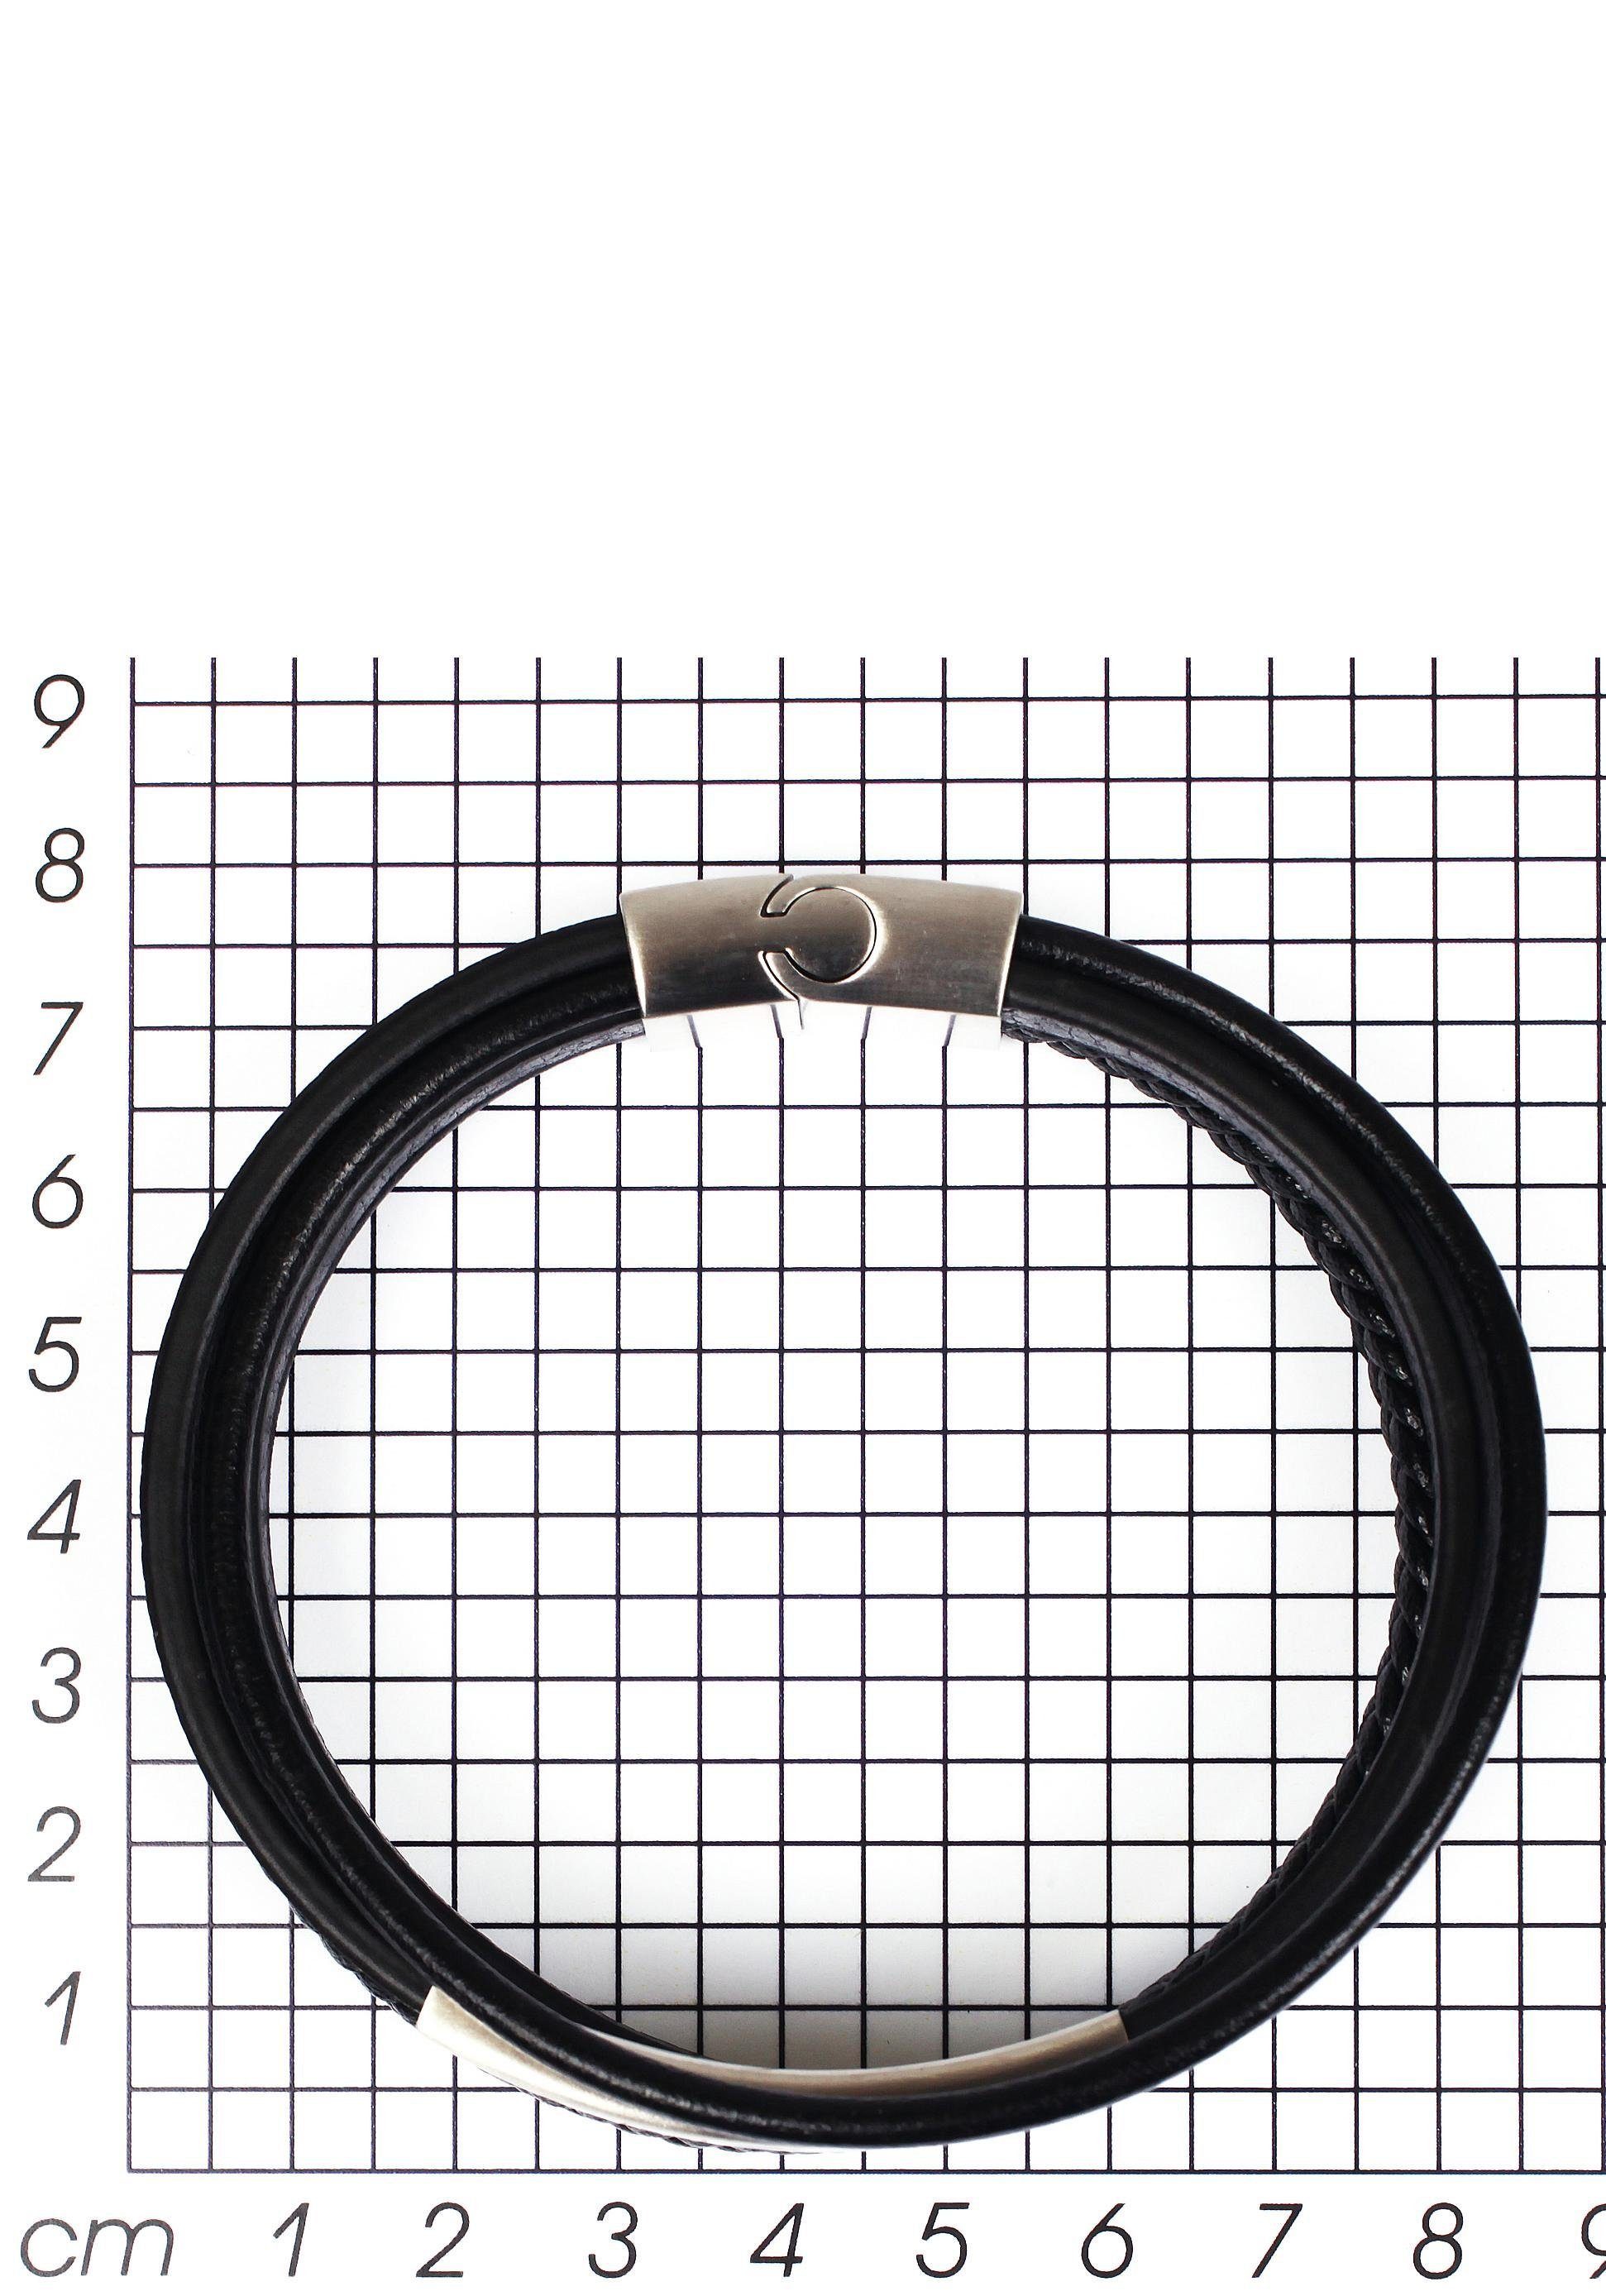 Firetti Armband stylisches Design sportlich-eleganten Stil, mehrreihig edelstahlfarben-schwarz im